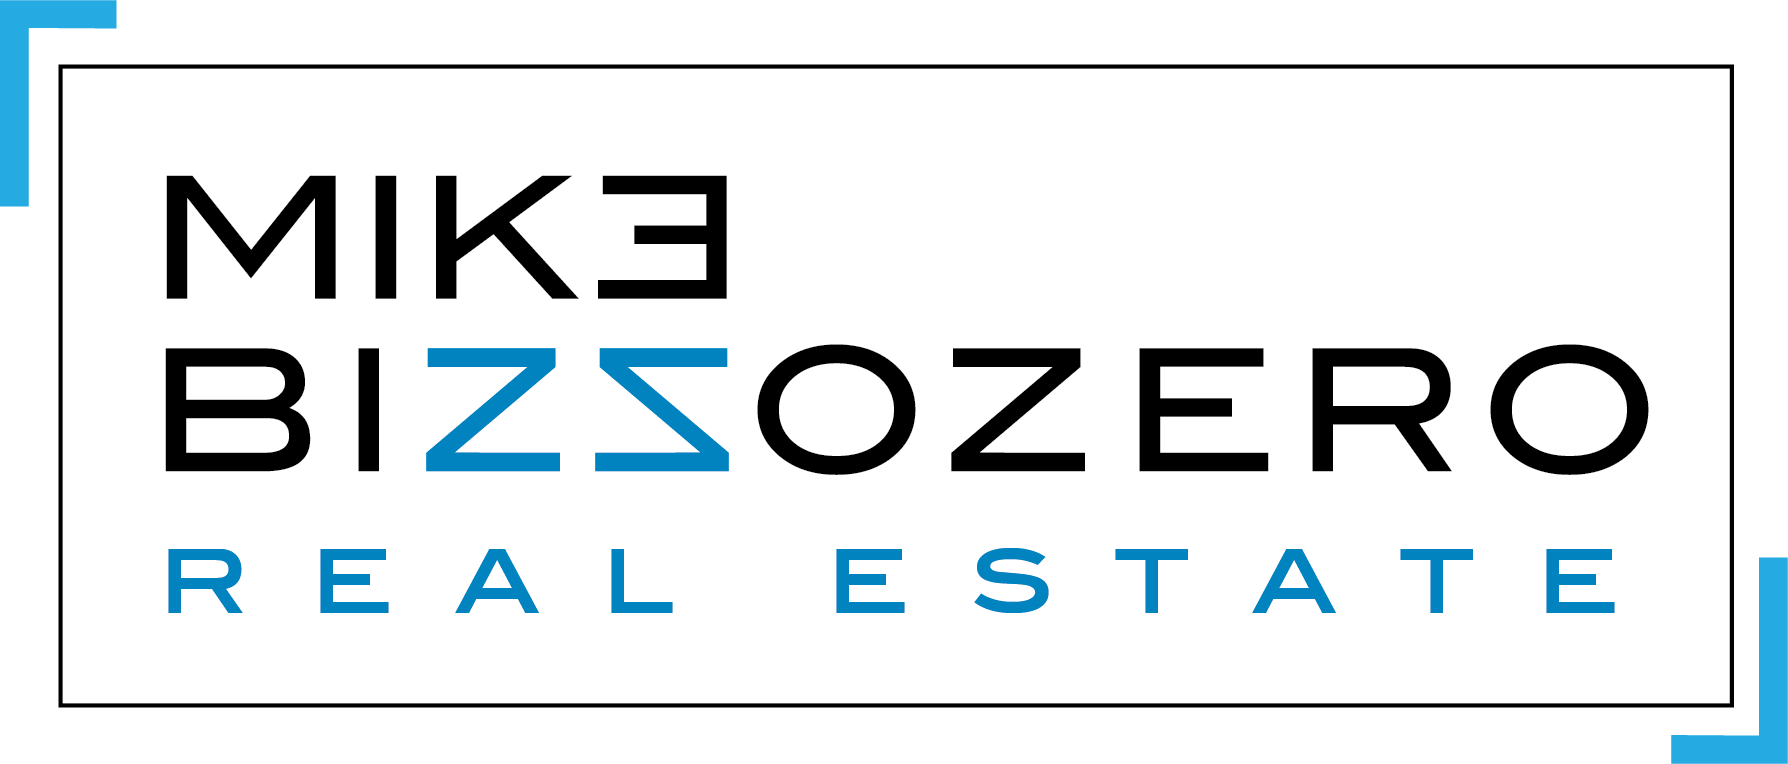 Mike Bizzozero Real Estate